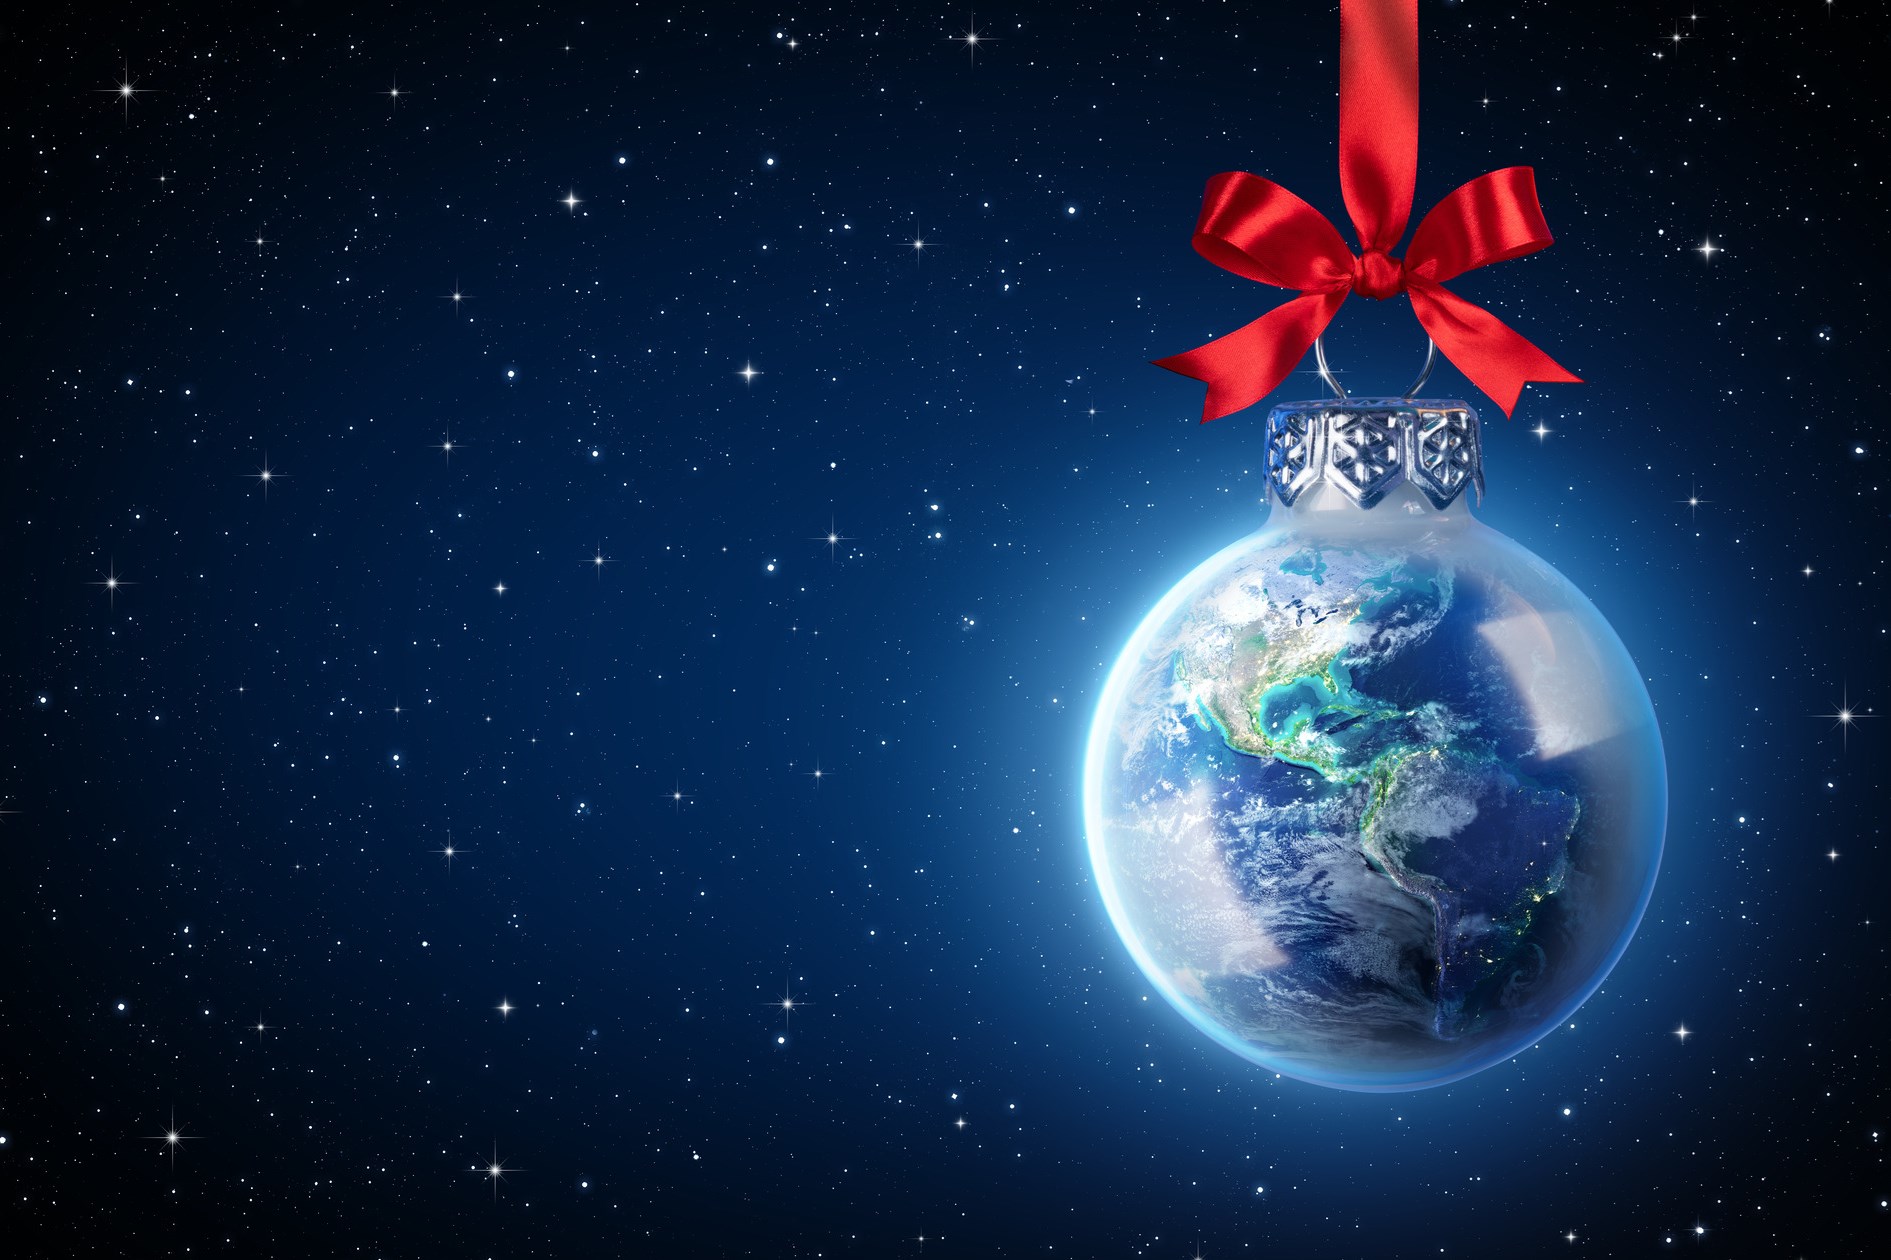 地球就像一个带着红色蝴蝶结的圣诞球